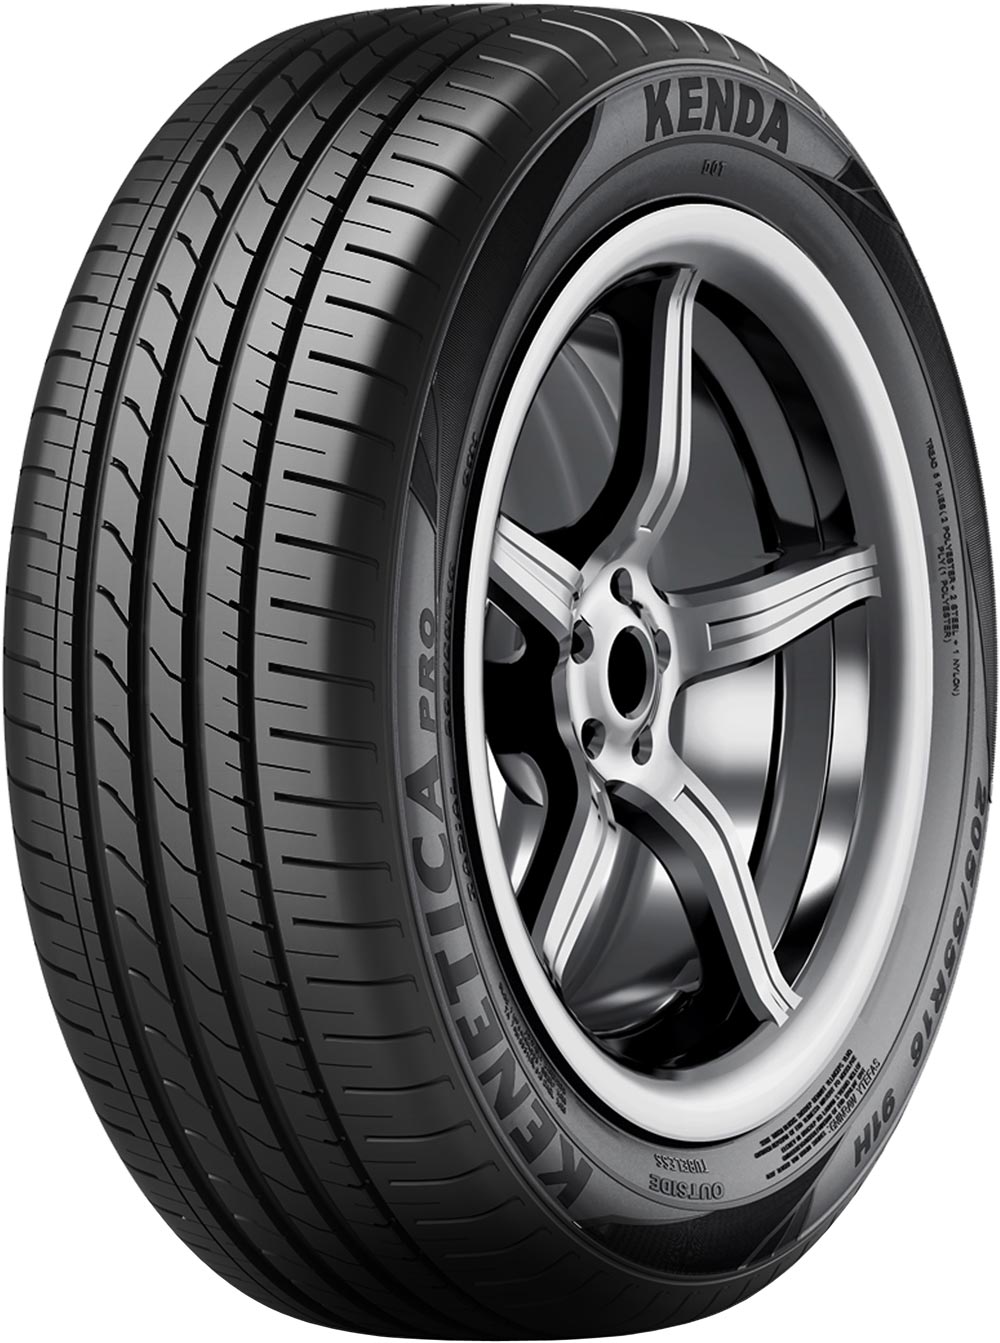 Автомобилни гуми KENDA Kenetica Pro 210 145/65 R15 72T